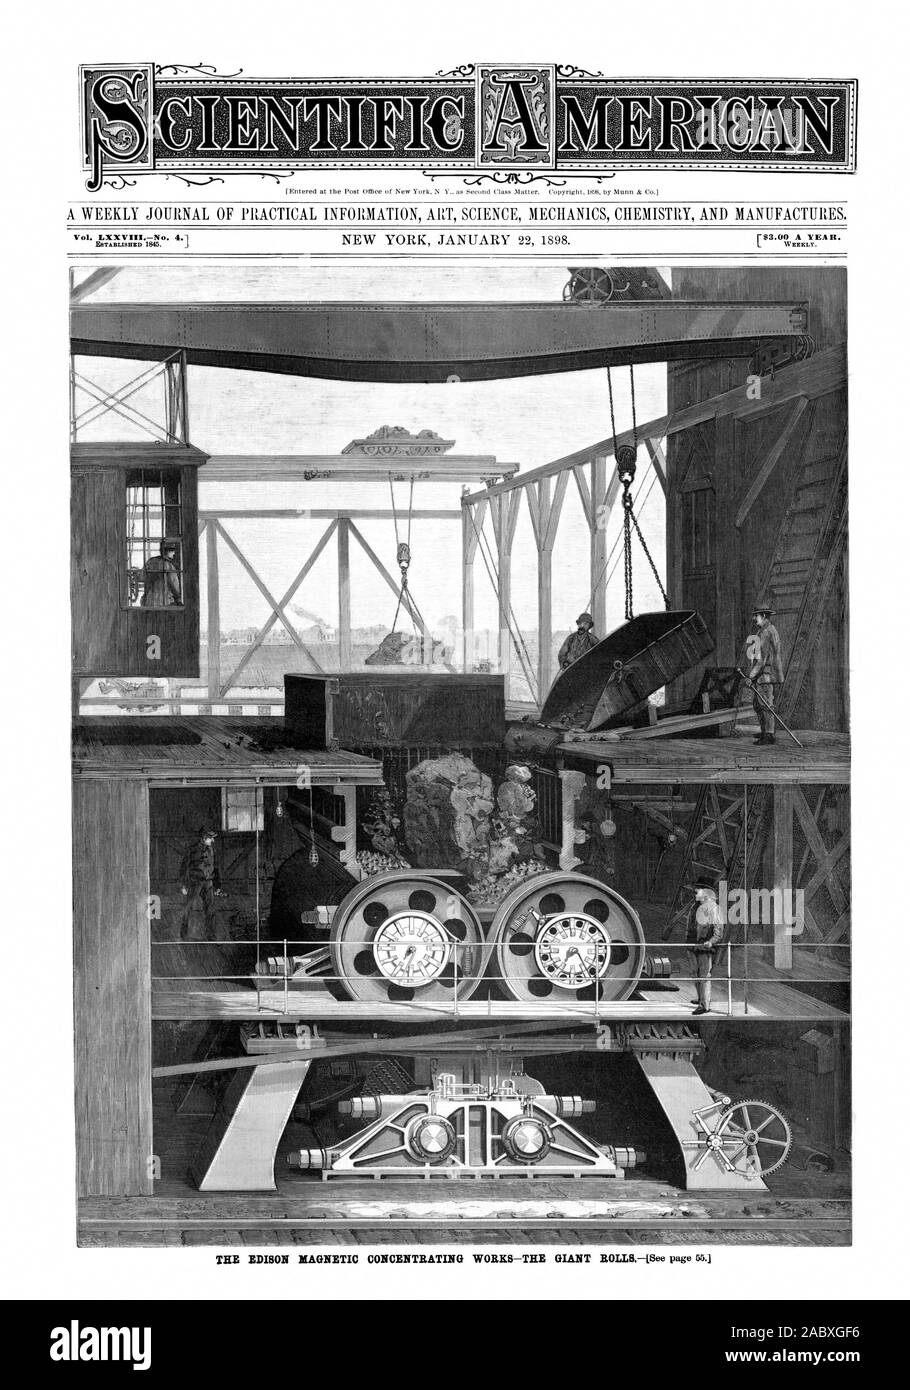 $3.00 un anno. Settimanalmente. Vol. LXXVIIINo. 4., Scientific American, 1898-01-22 Foto Stock